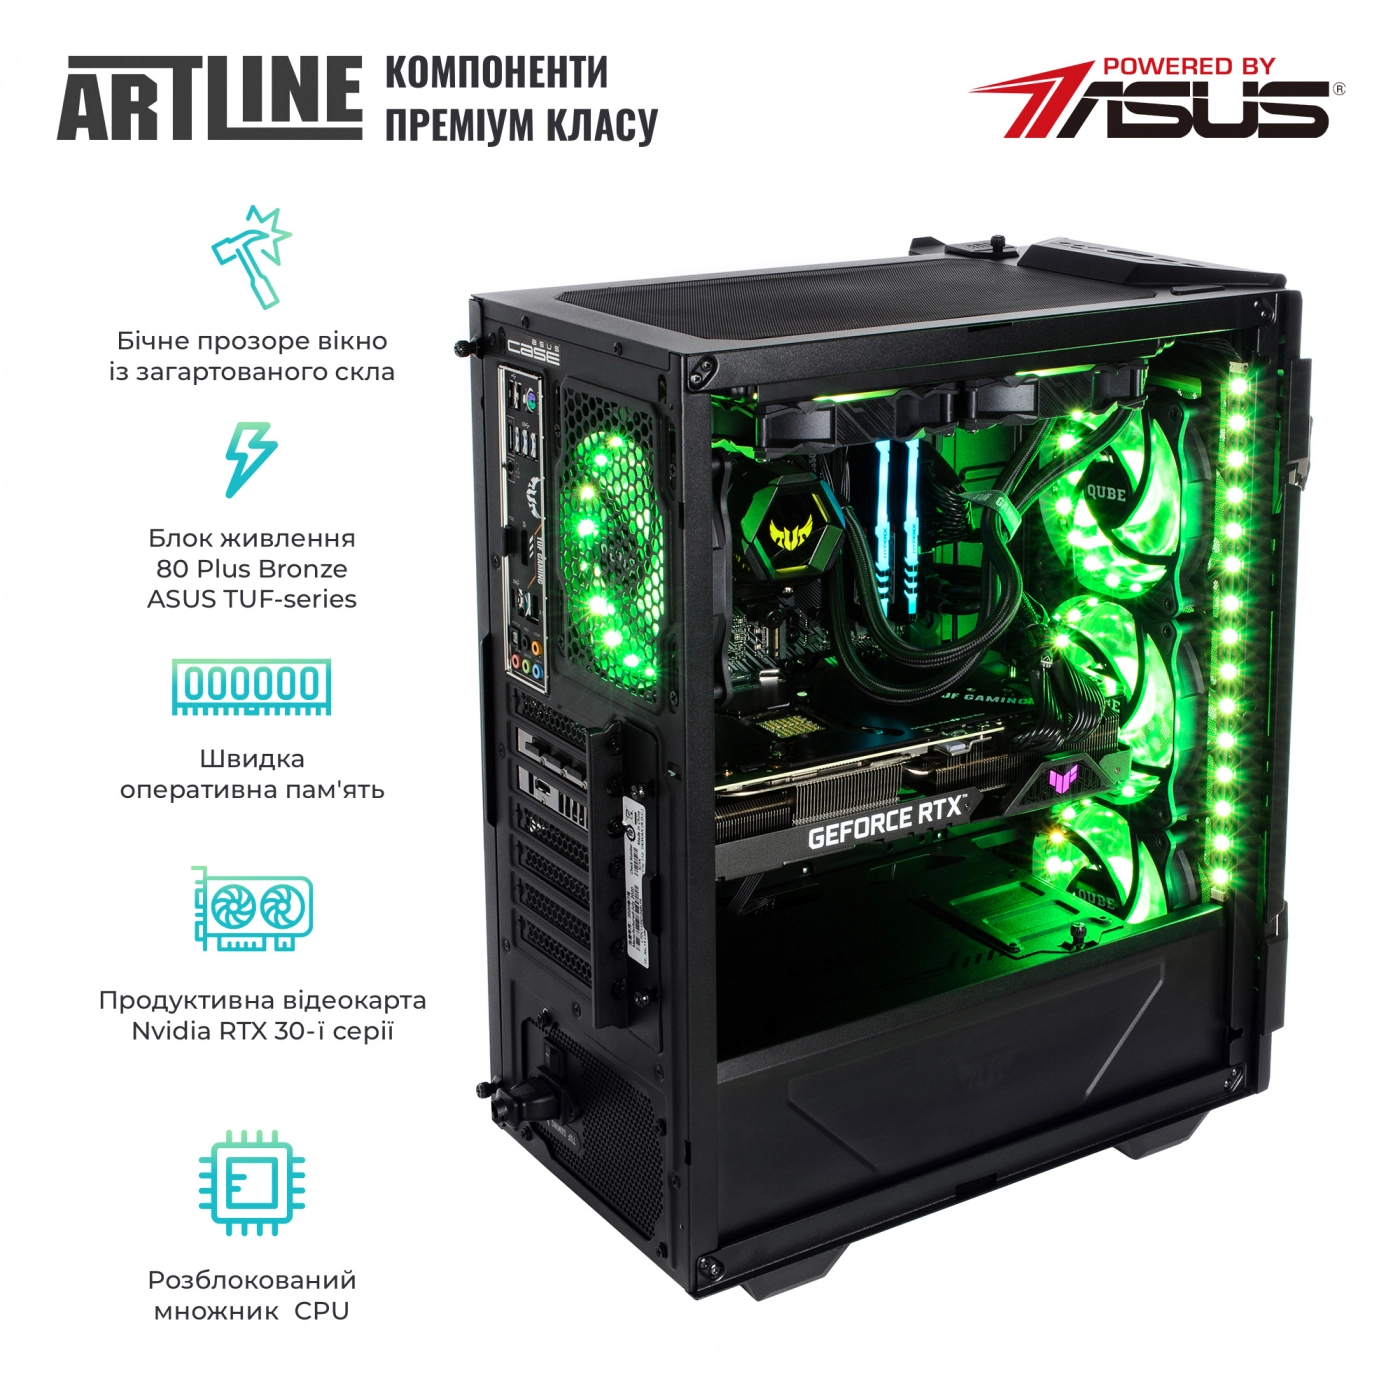 Купить Компьютер ARTLINE Gaming TUFv52 - фото 10